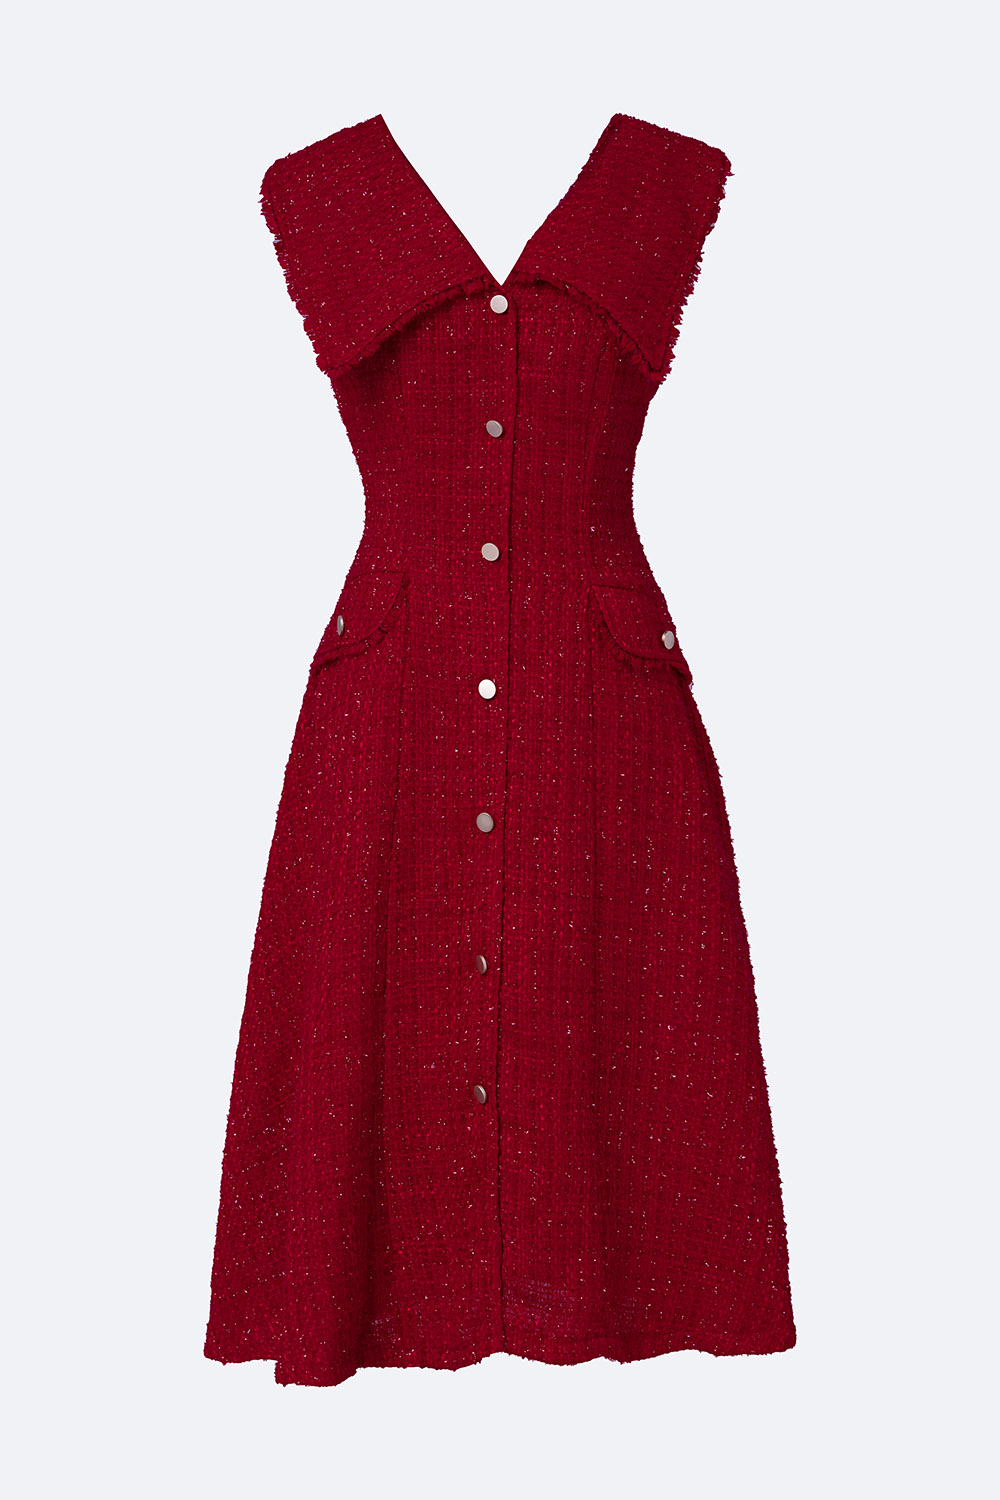 Đầm đỏ dự tiệc dáng xòe vải tweed KK120-01 | Thời trang công sở ...